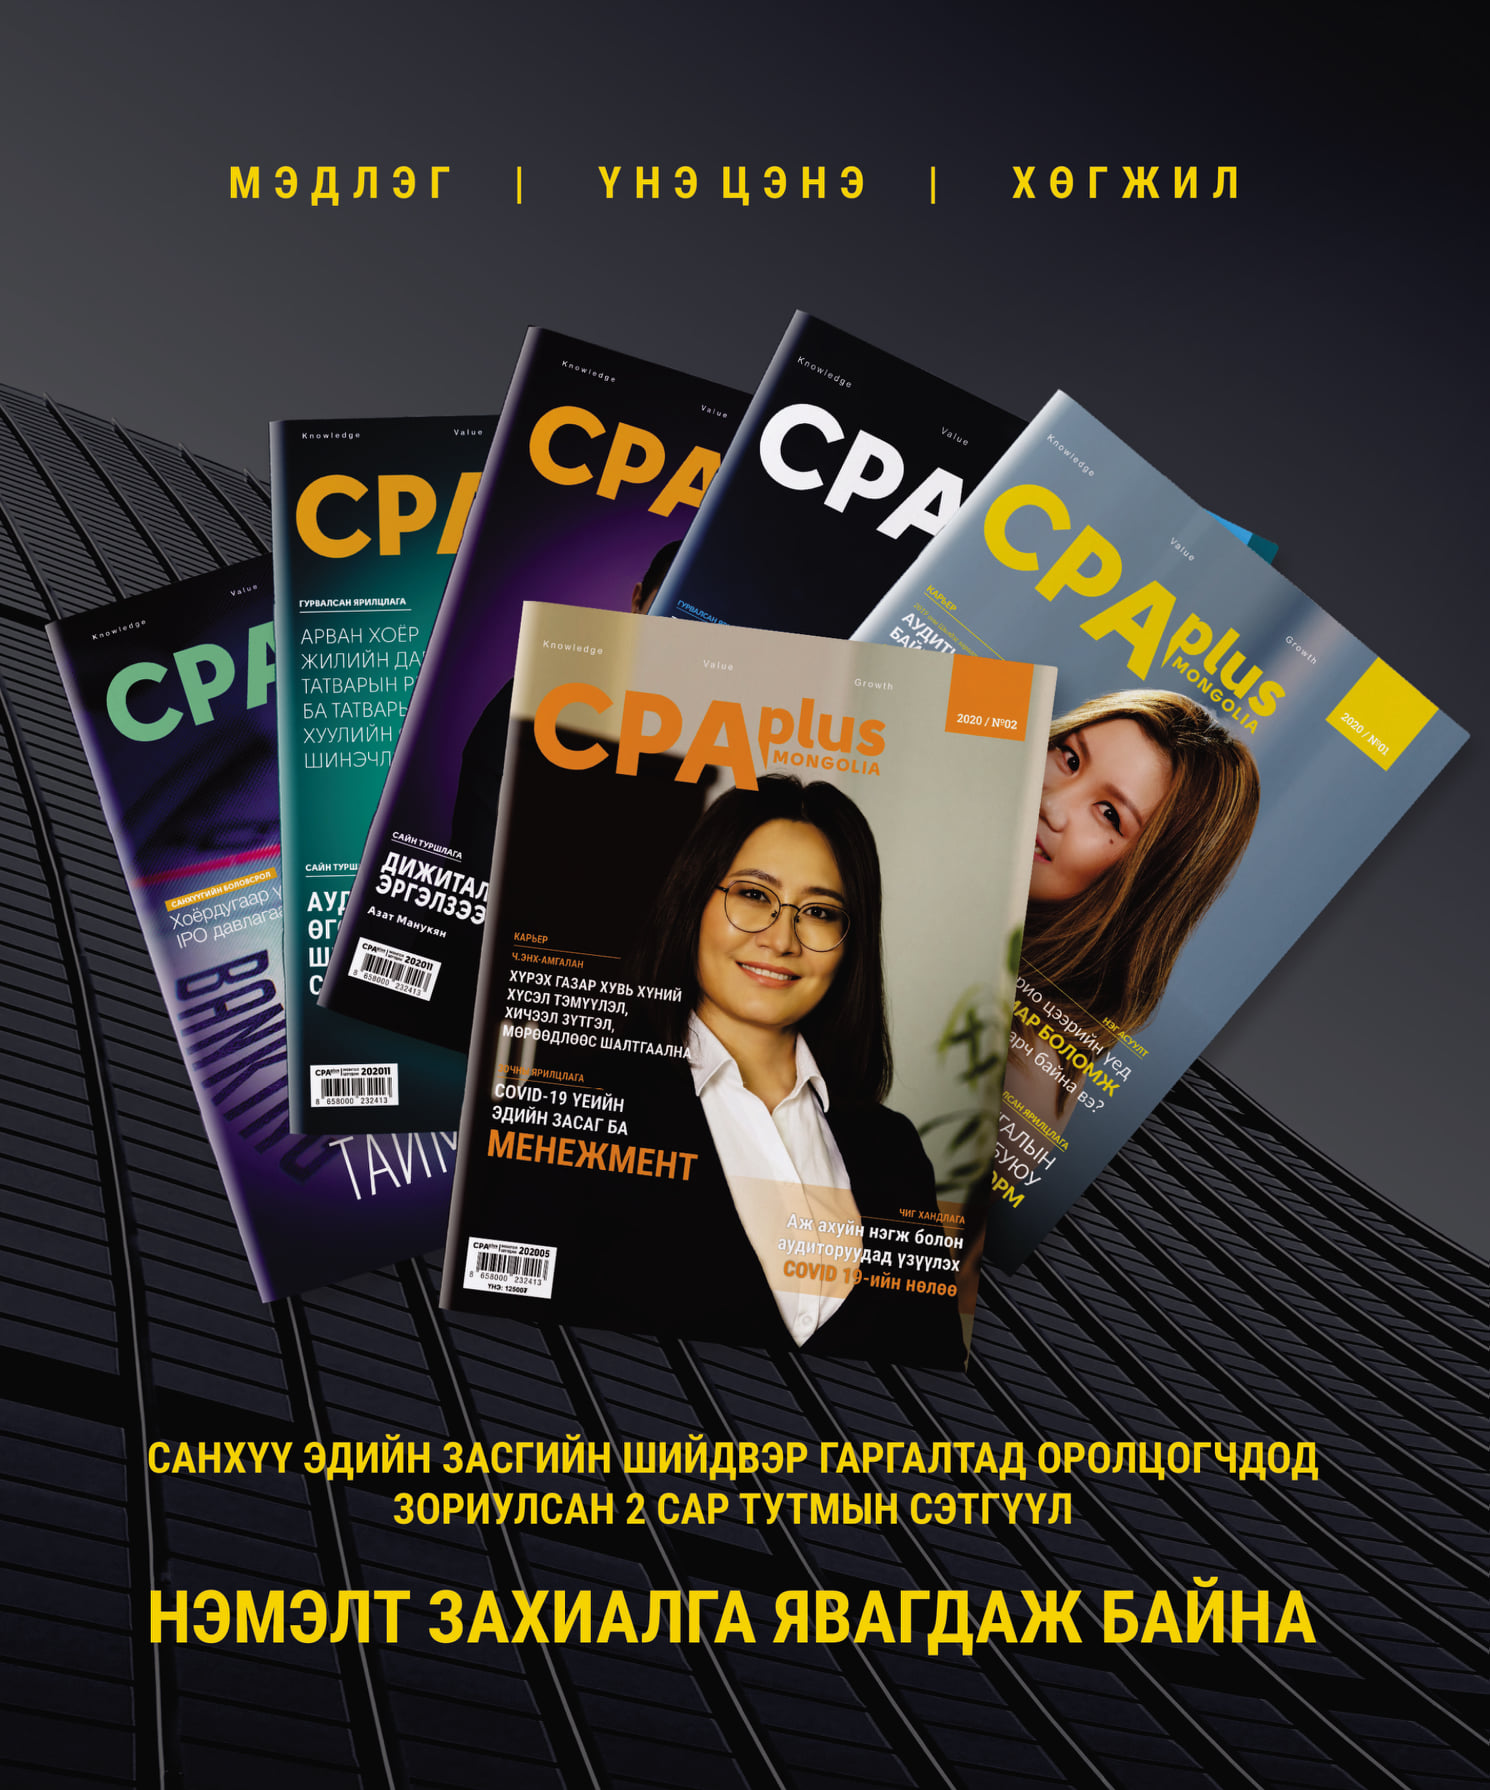 CPA Plus Mongolia сэтгүүлд нийтлэл байршлаа.